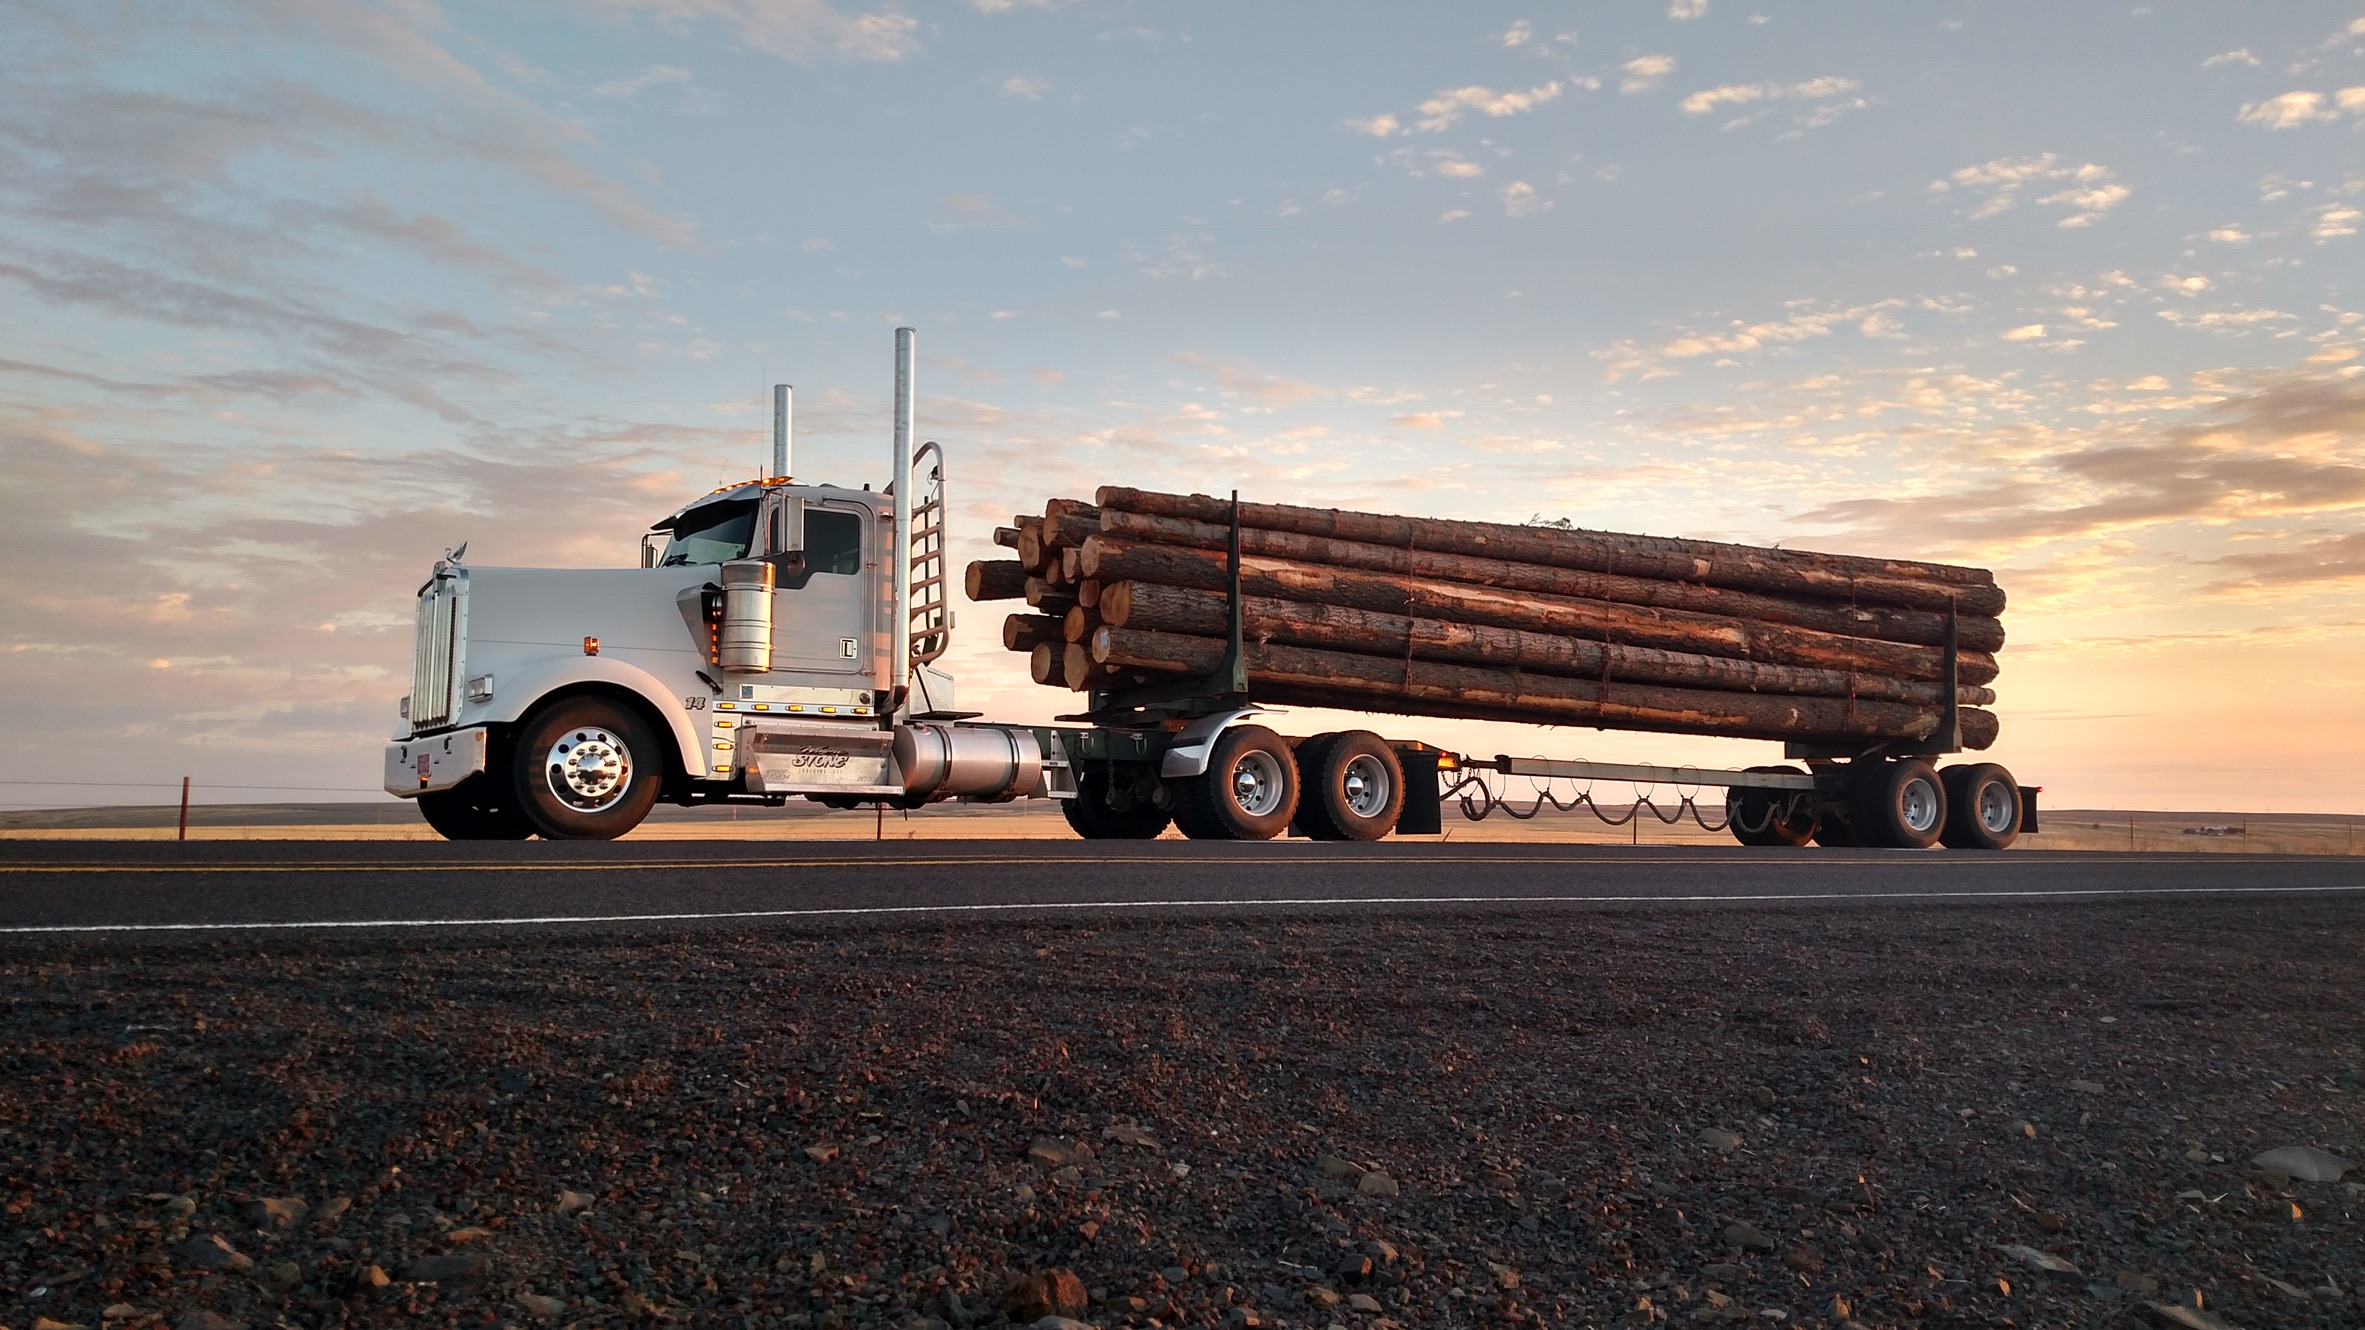 Wayne Stone operates nine log trucks & two lowboys under Wayne Stone Trucking, LLC